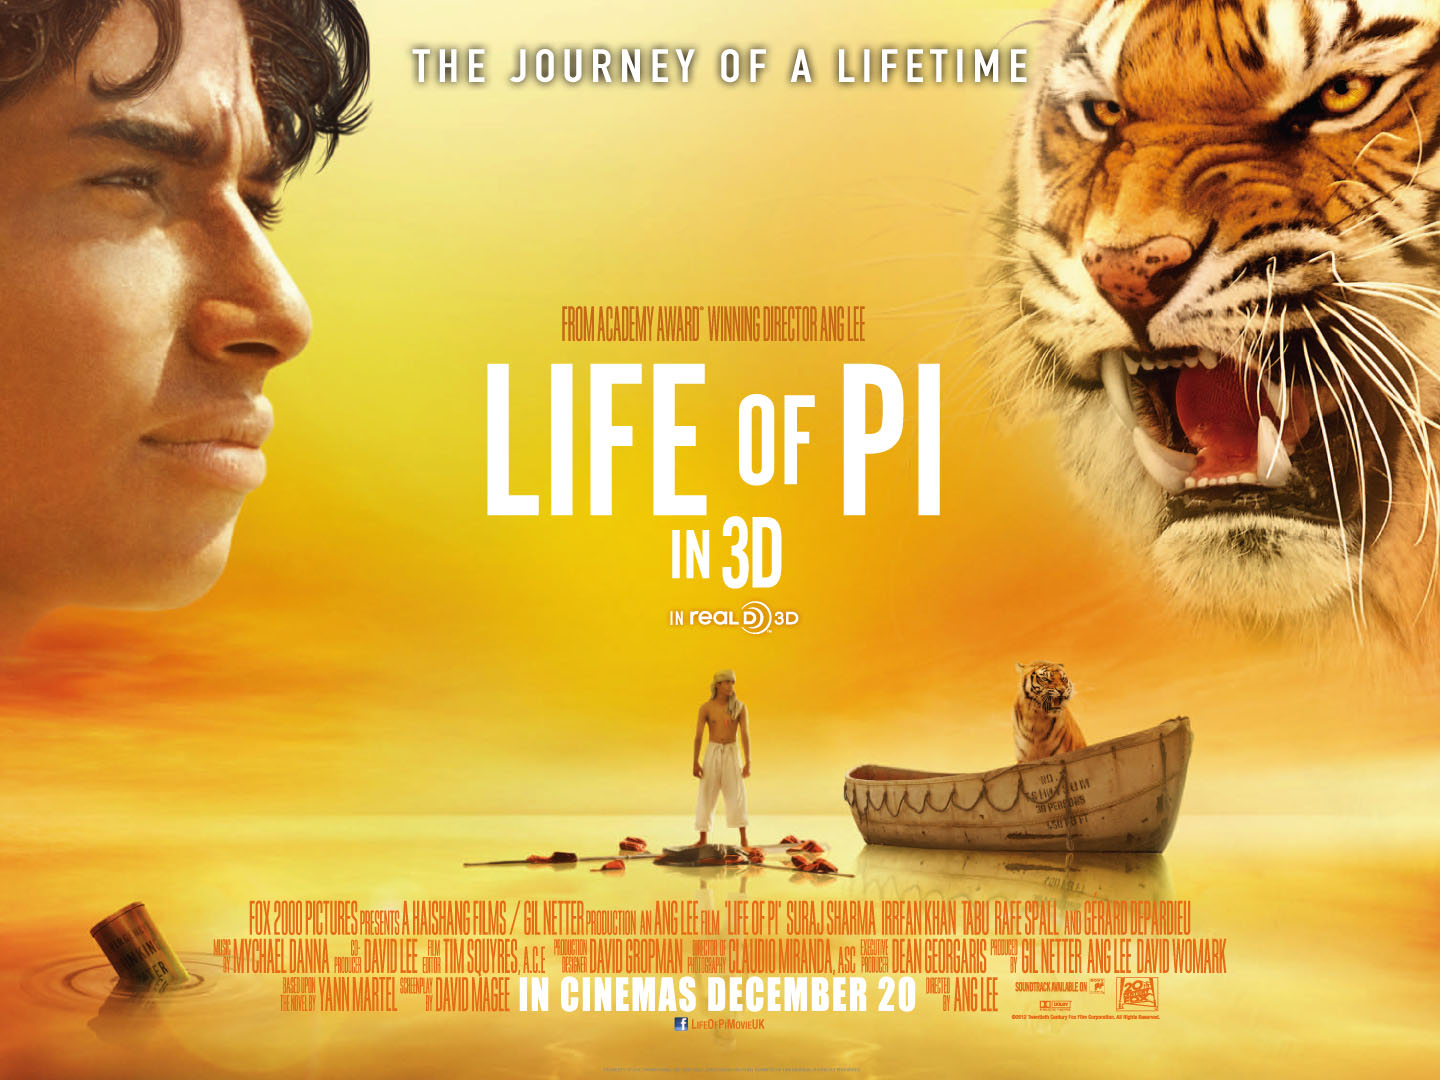 life of pi movie tiger